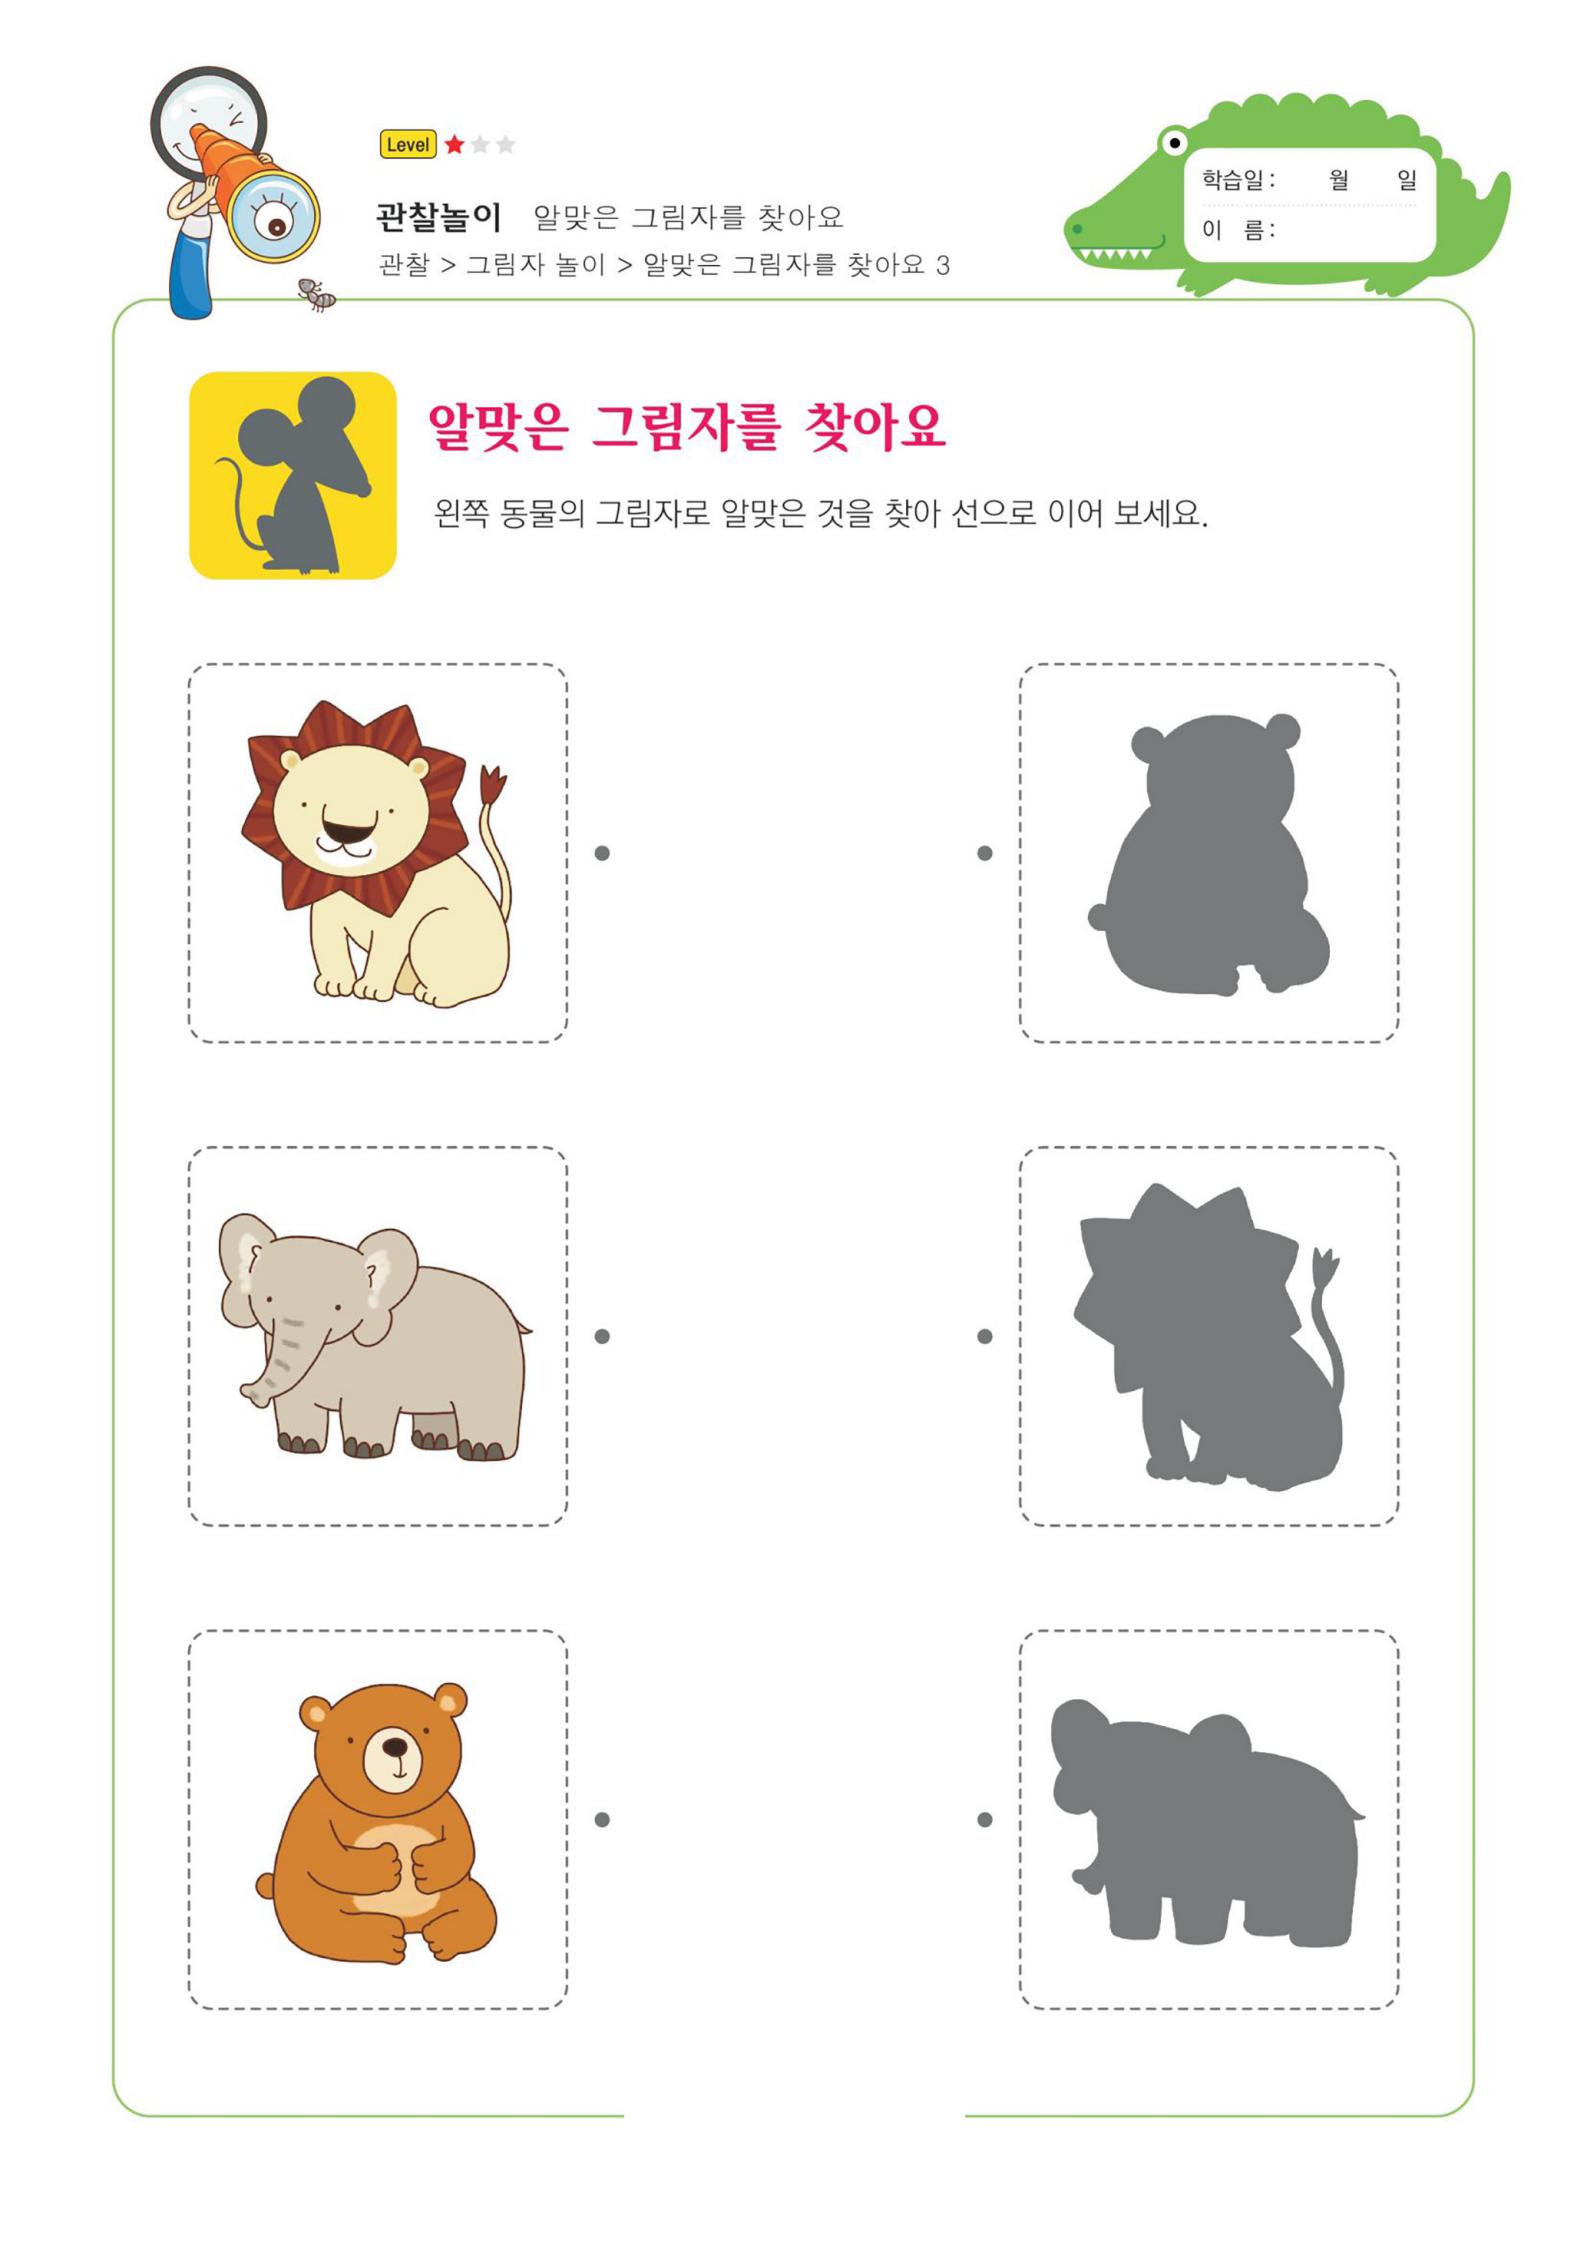 60张韩国影子配对图卡训练幼儿注意力专注力学习能力